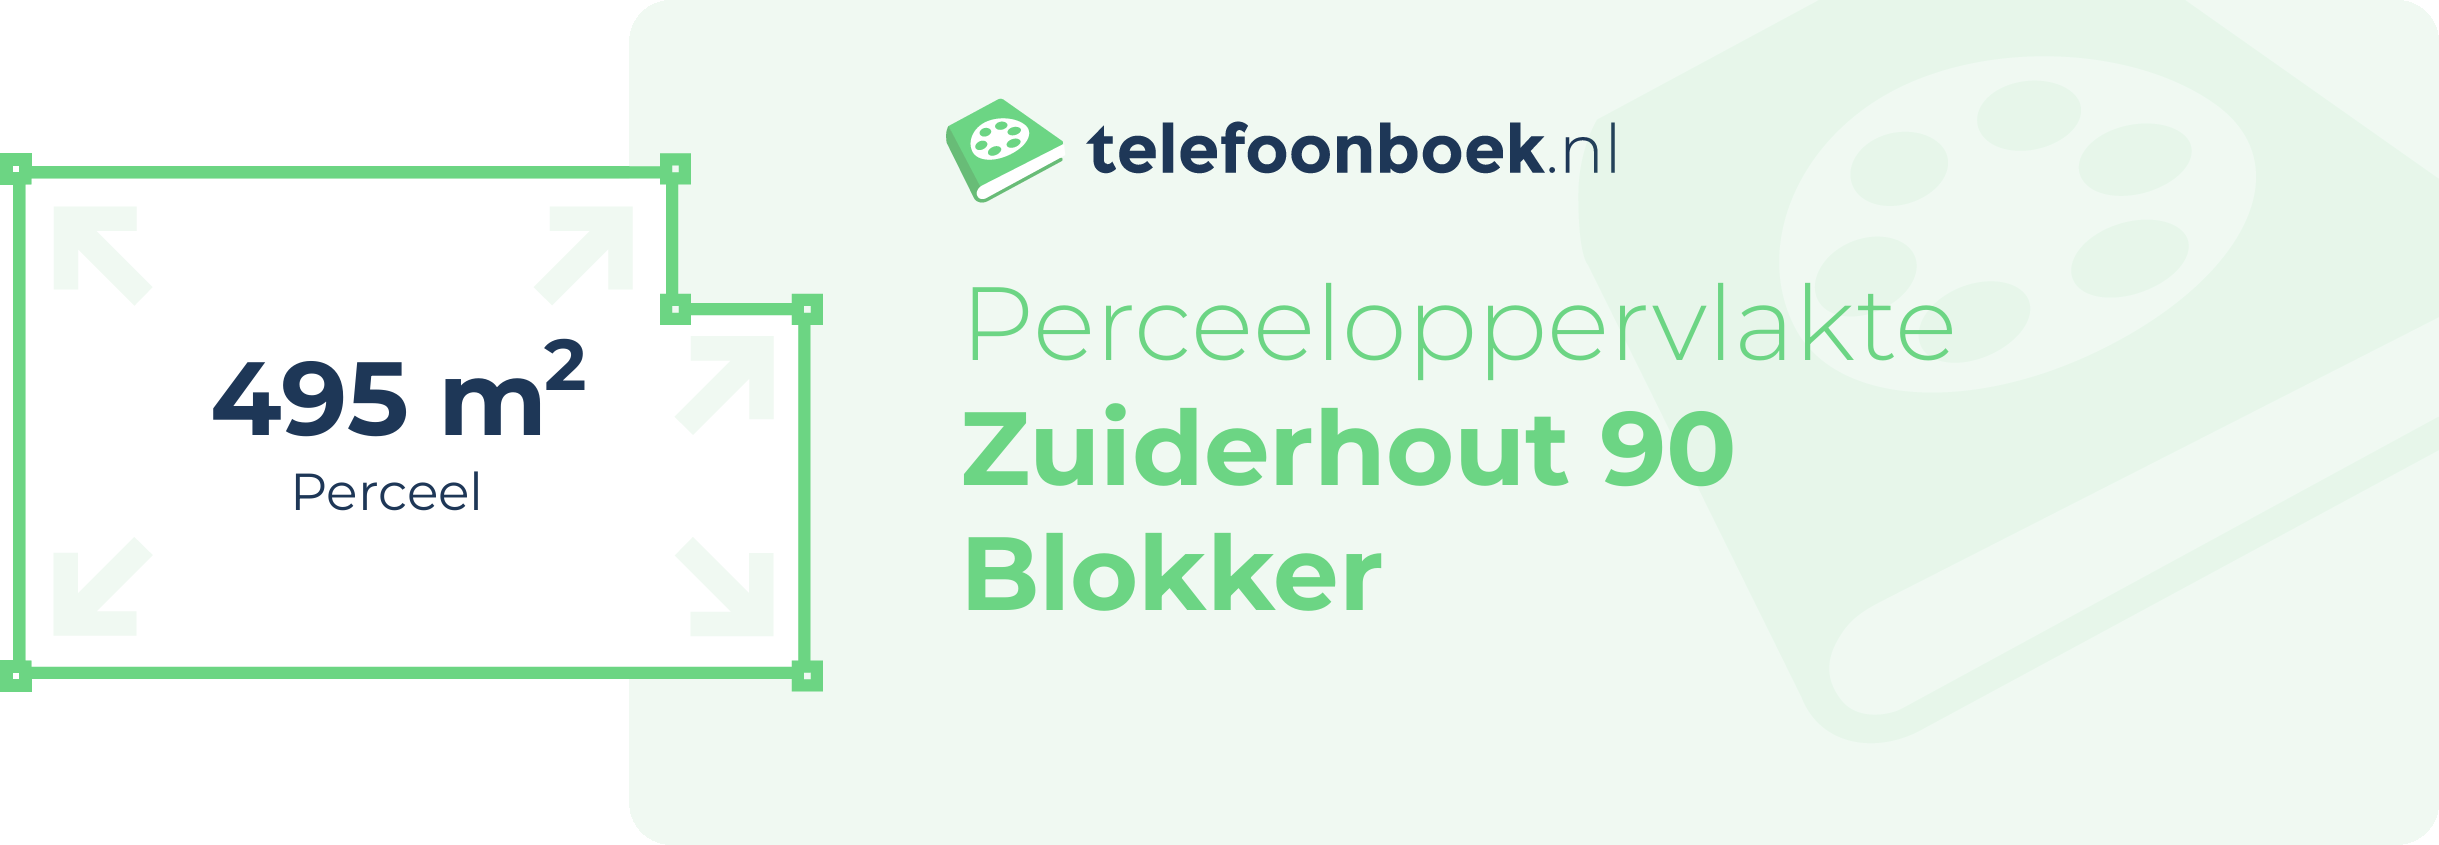 Perceeloppervlakte Zuiderhout 90 Blokker